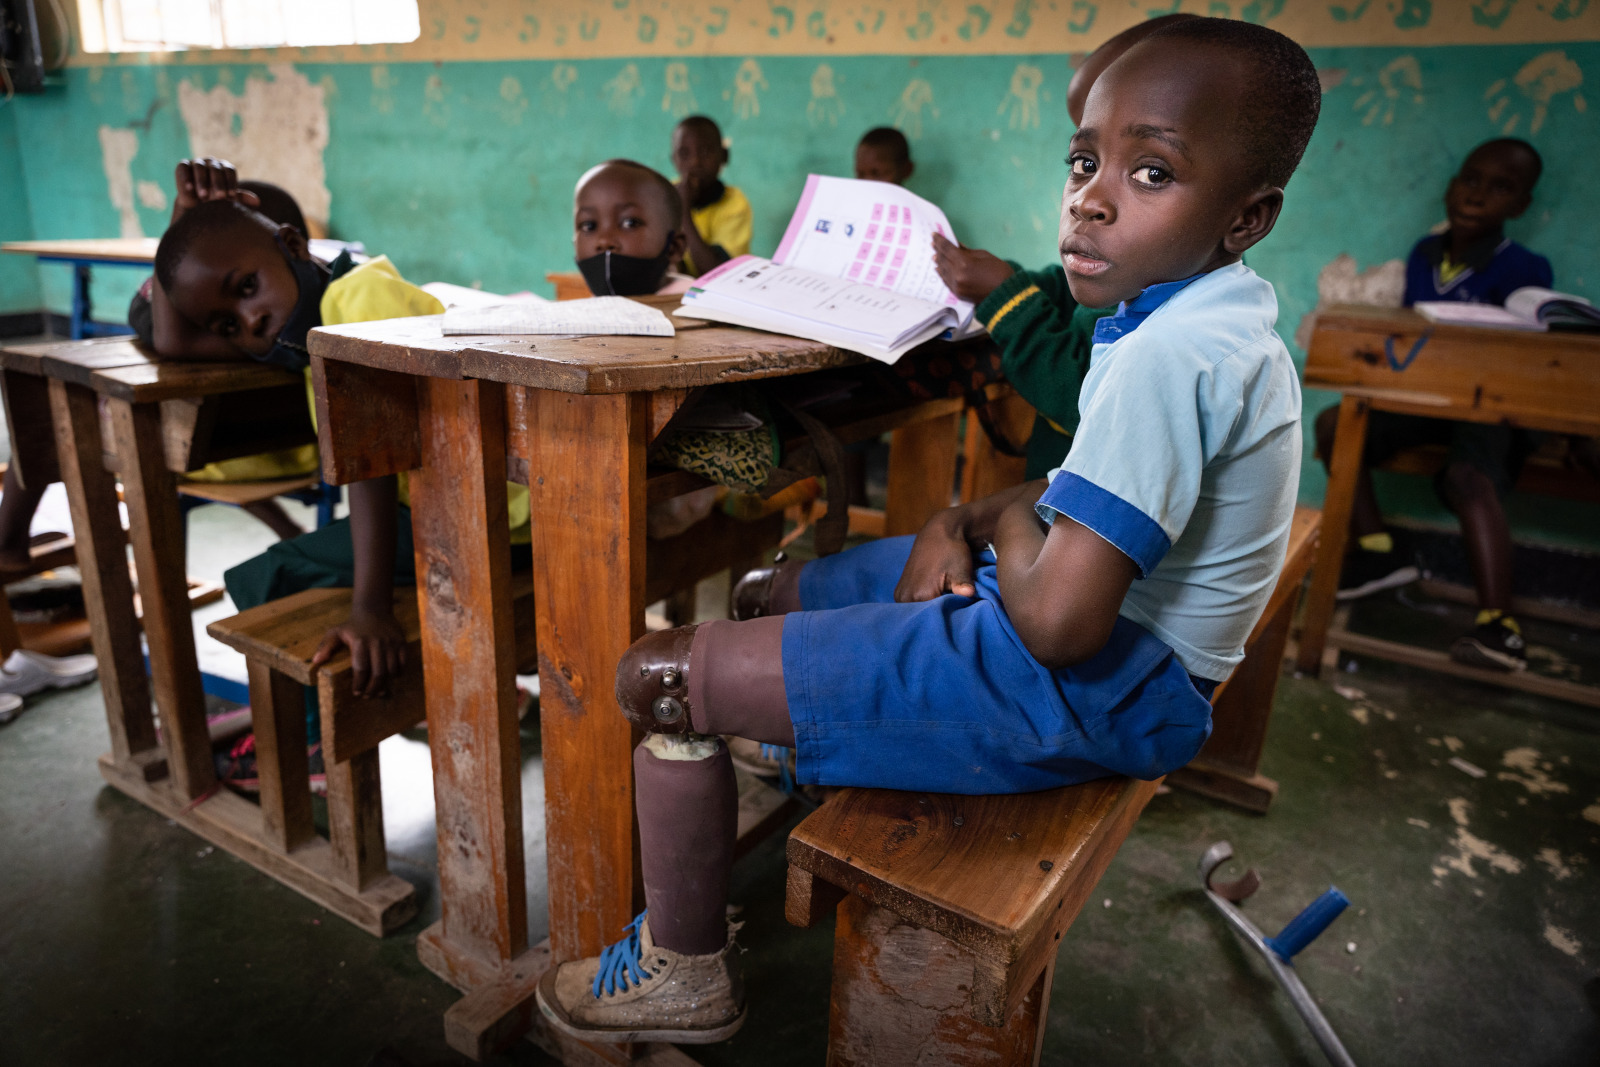  De negenjarige Longini in Rwanda kreeg dankzij de hulp van Handicap International in 2019 zijn eerste prothesen aangemeten. Het zorgde ervoor dat Longini opnieuw naar school kon. 